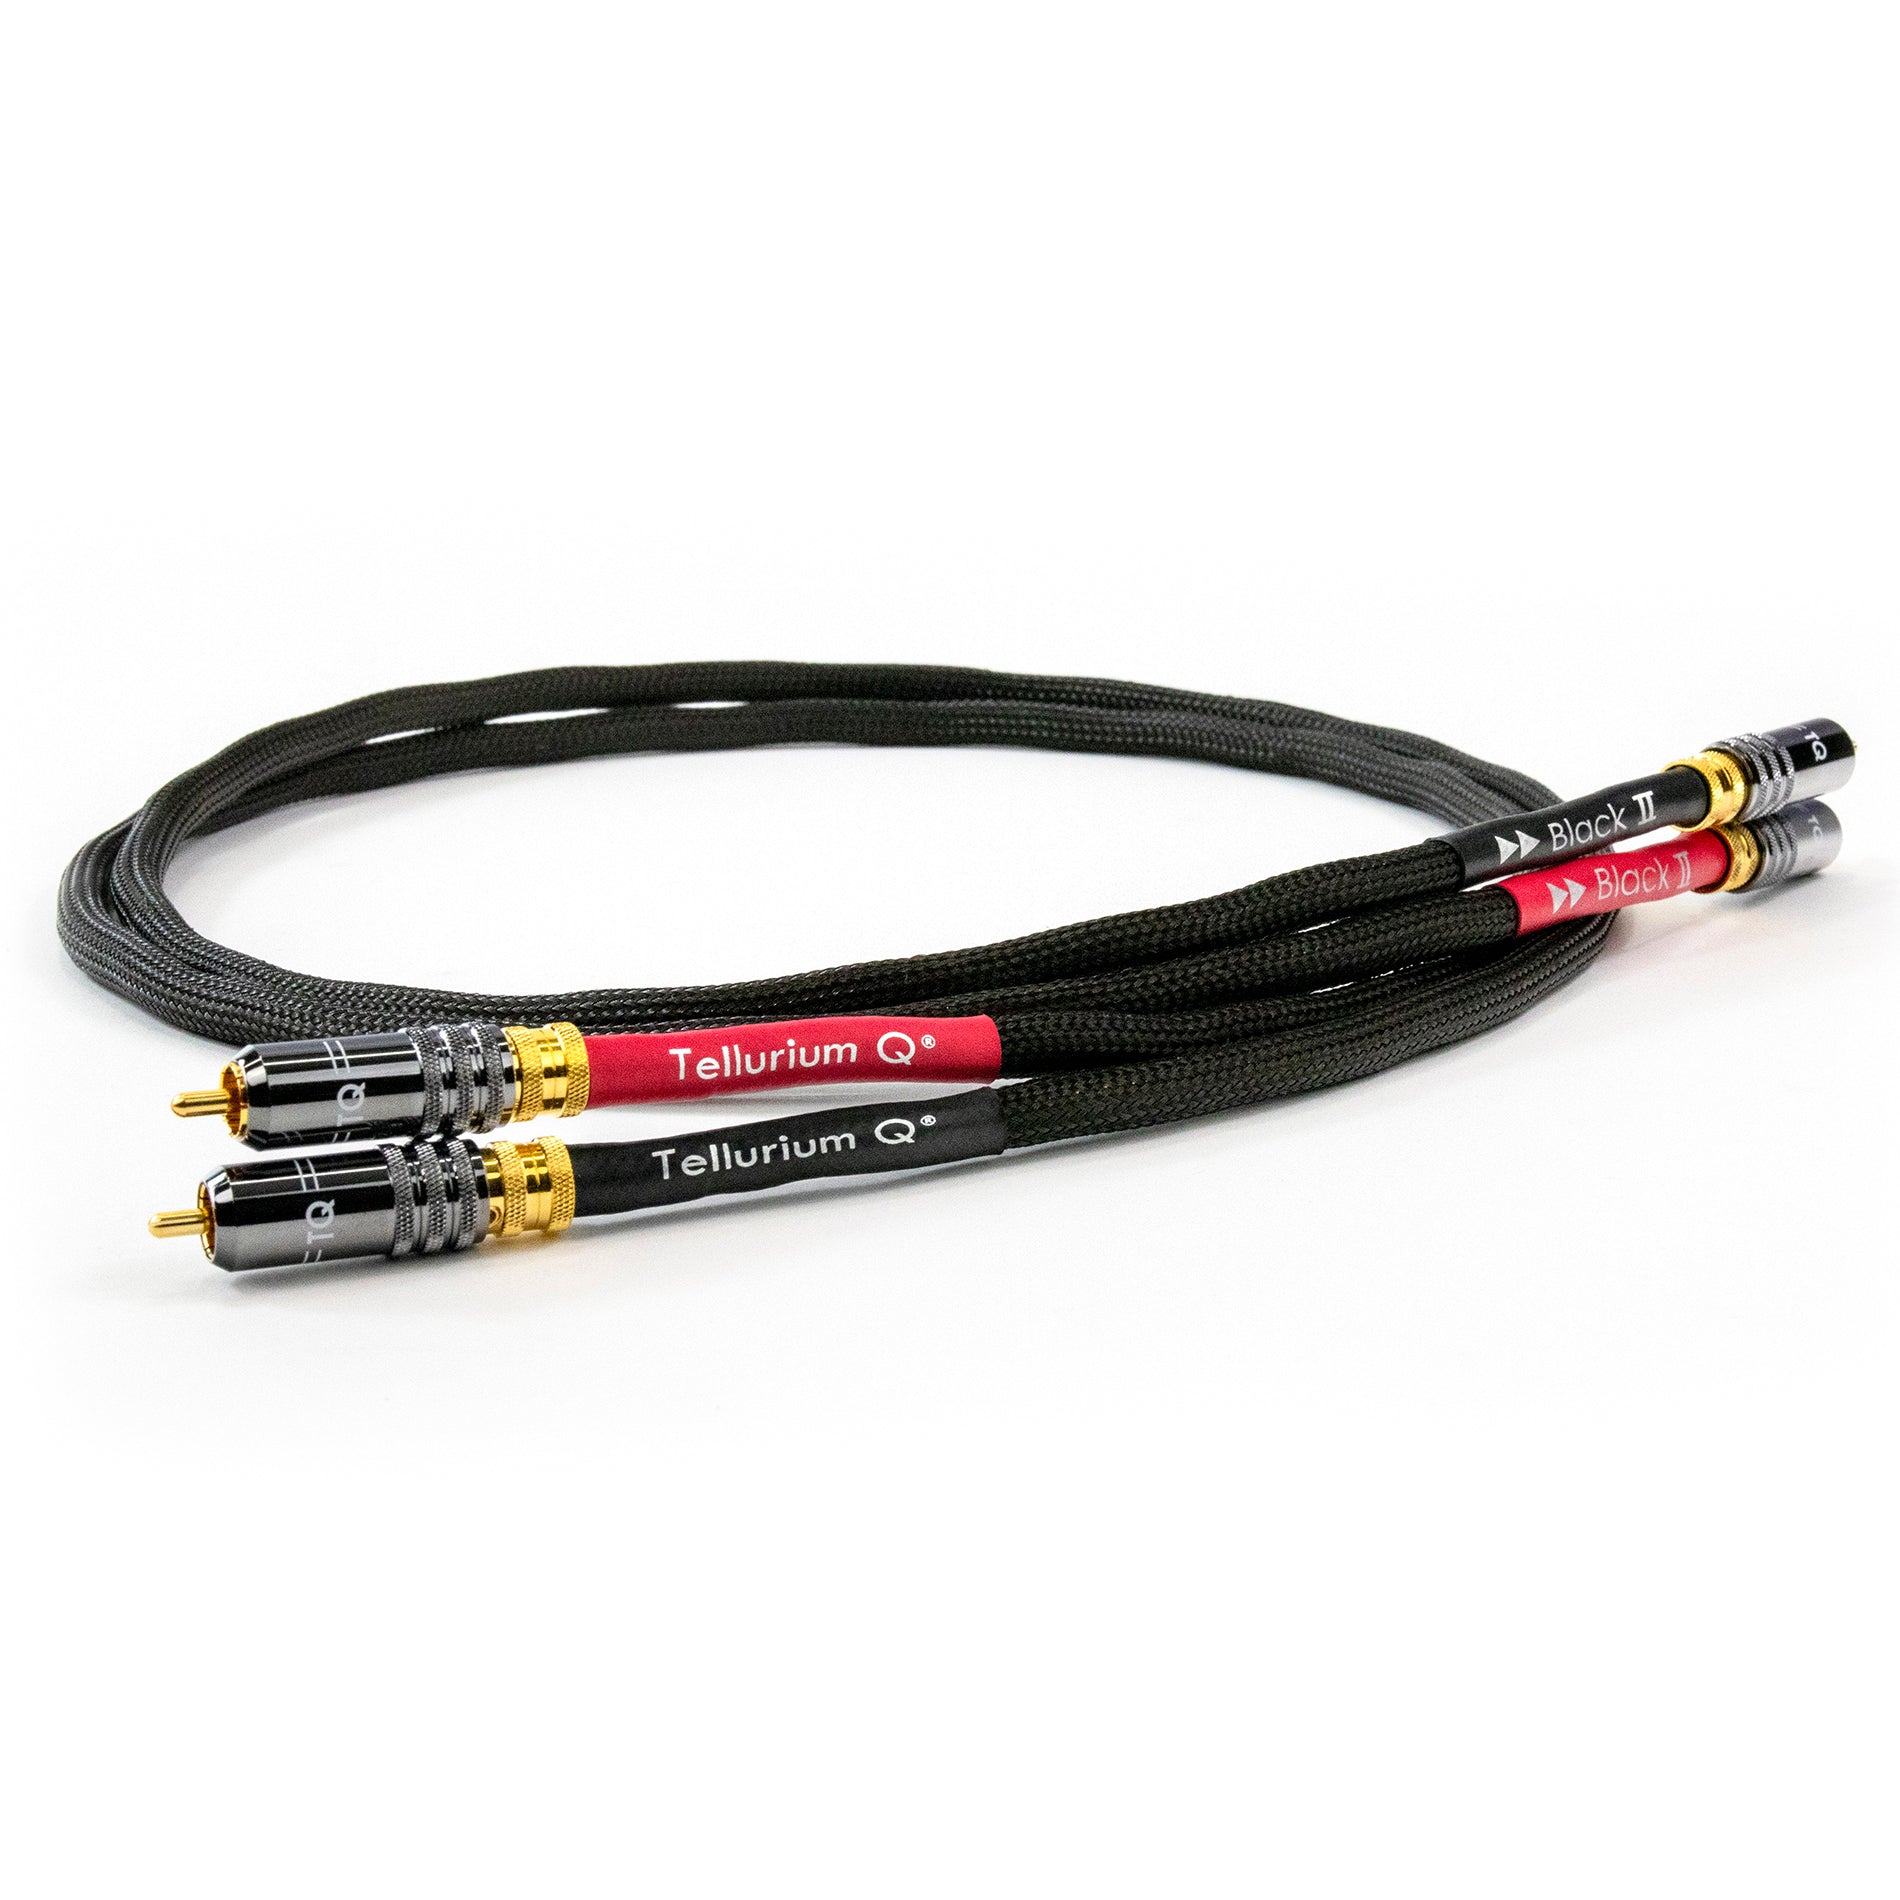 Tellurium Q Black II RCA Interconnect Cable (pair)